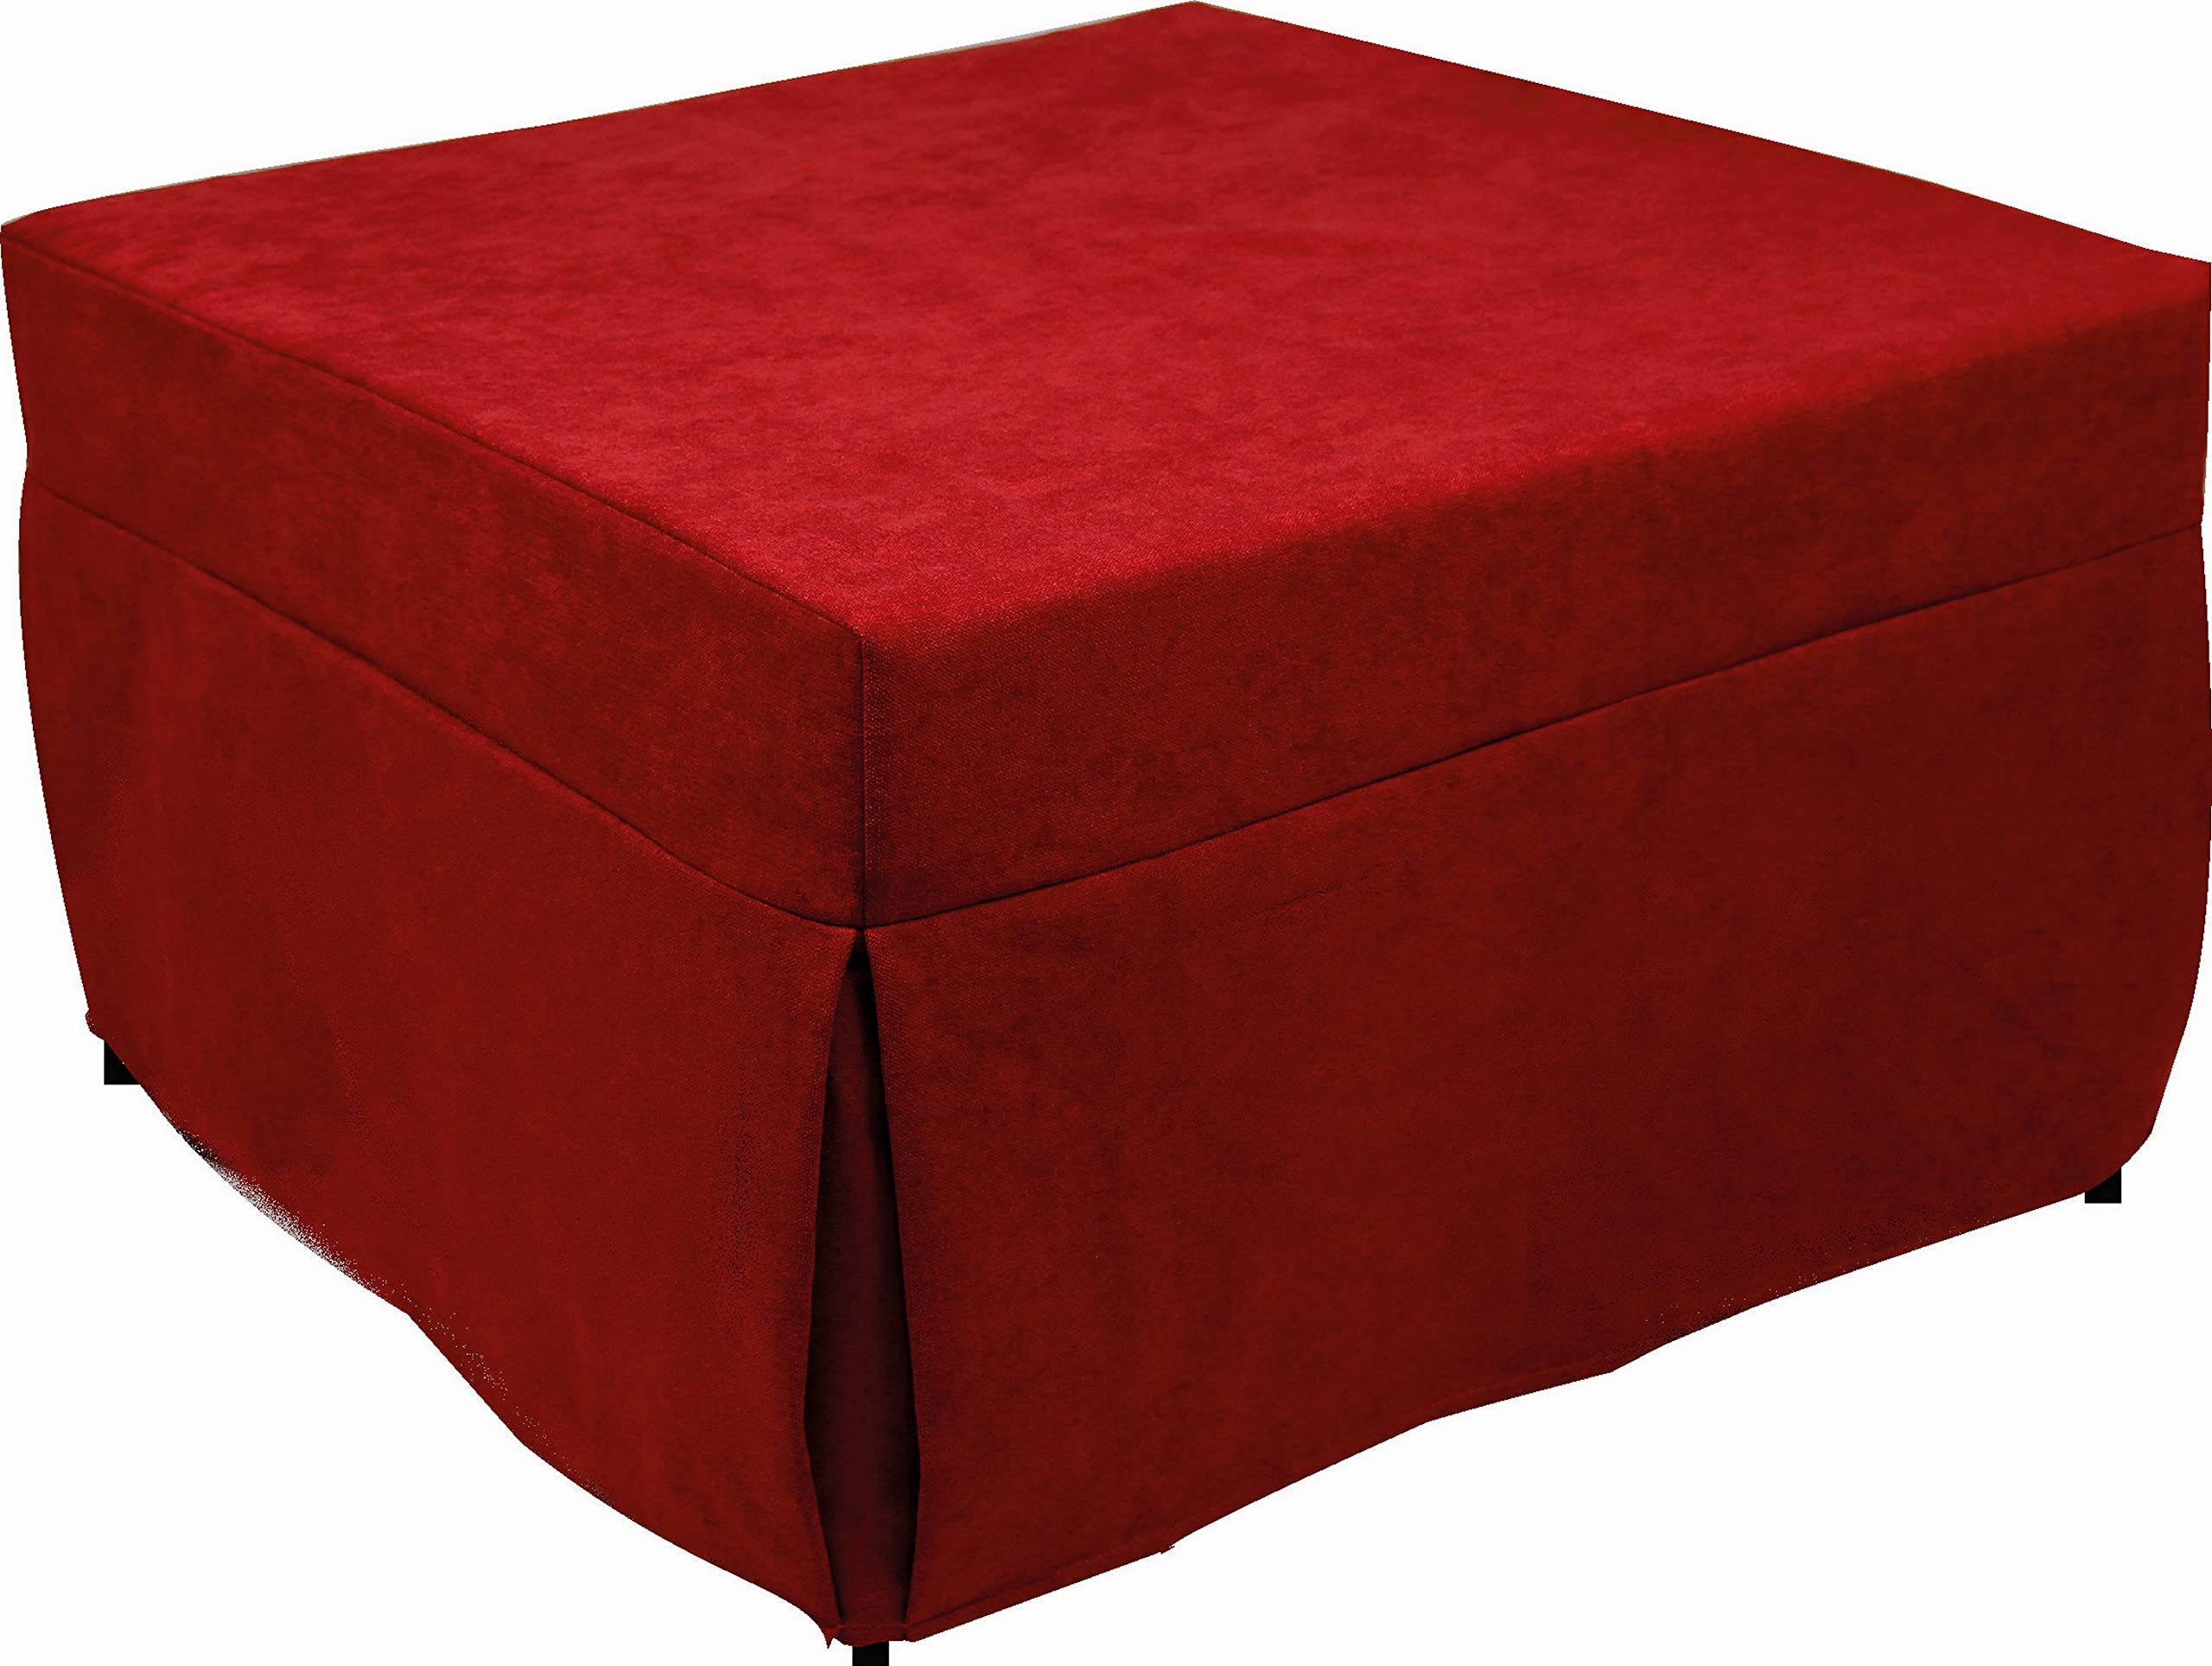 Dmora Puof in ein Einzelbett umwandelbar, Made in Italy, Klappbett, Pouf mit abnehmbarem, platzsparendem Stoff für das Wohnzimmer, cm 78x78 / 195h45, Rot